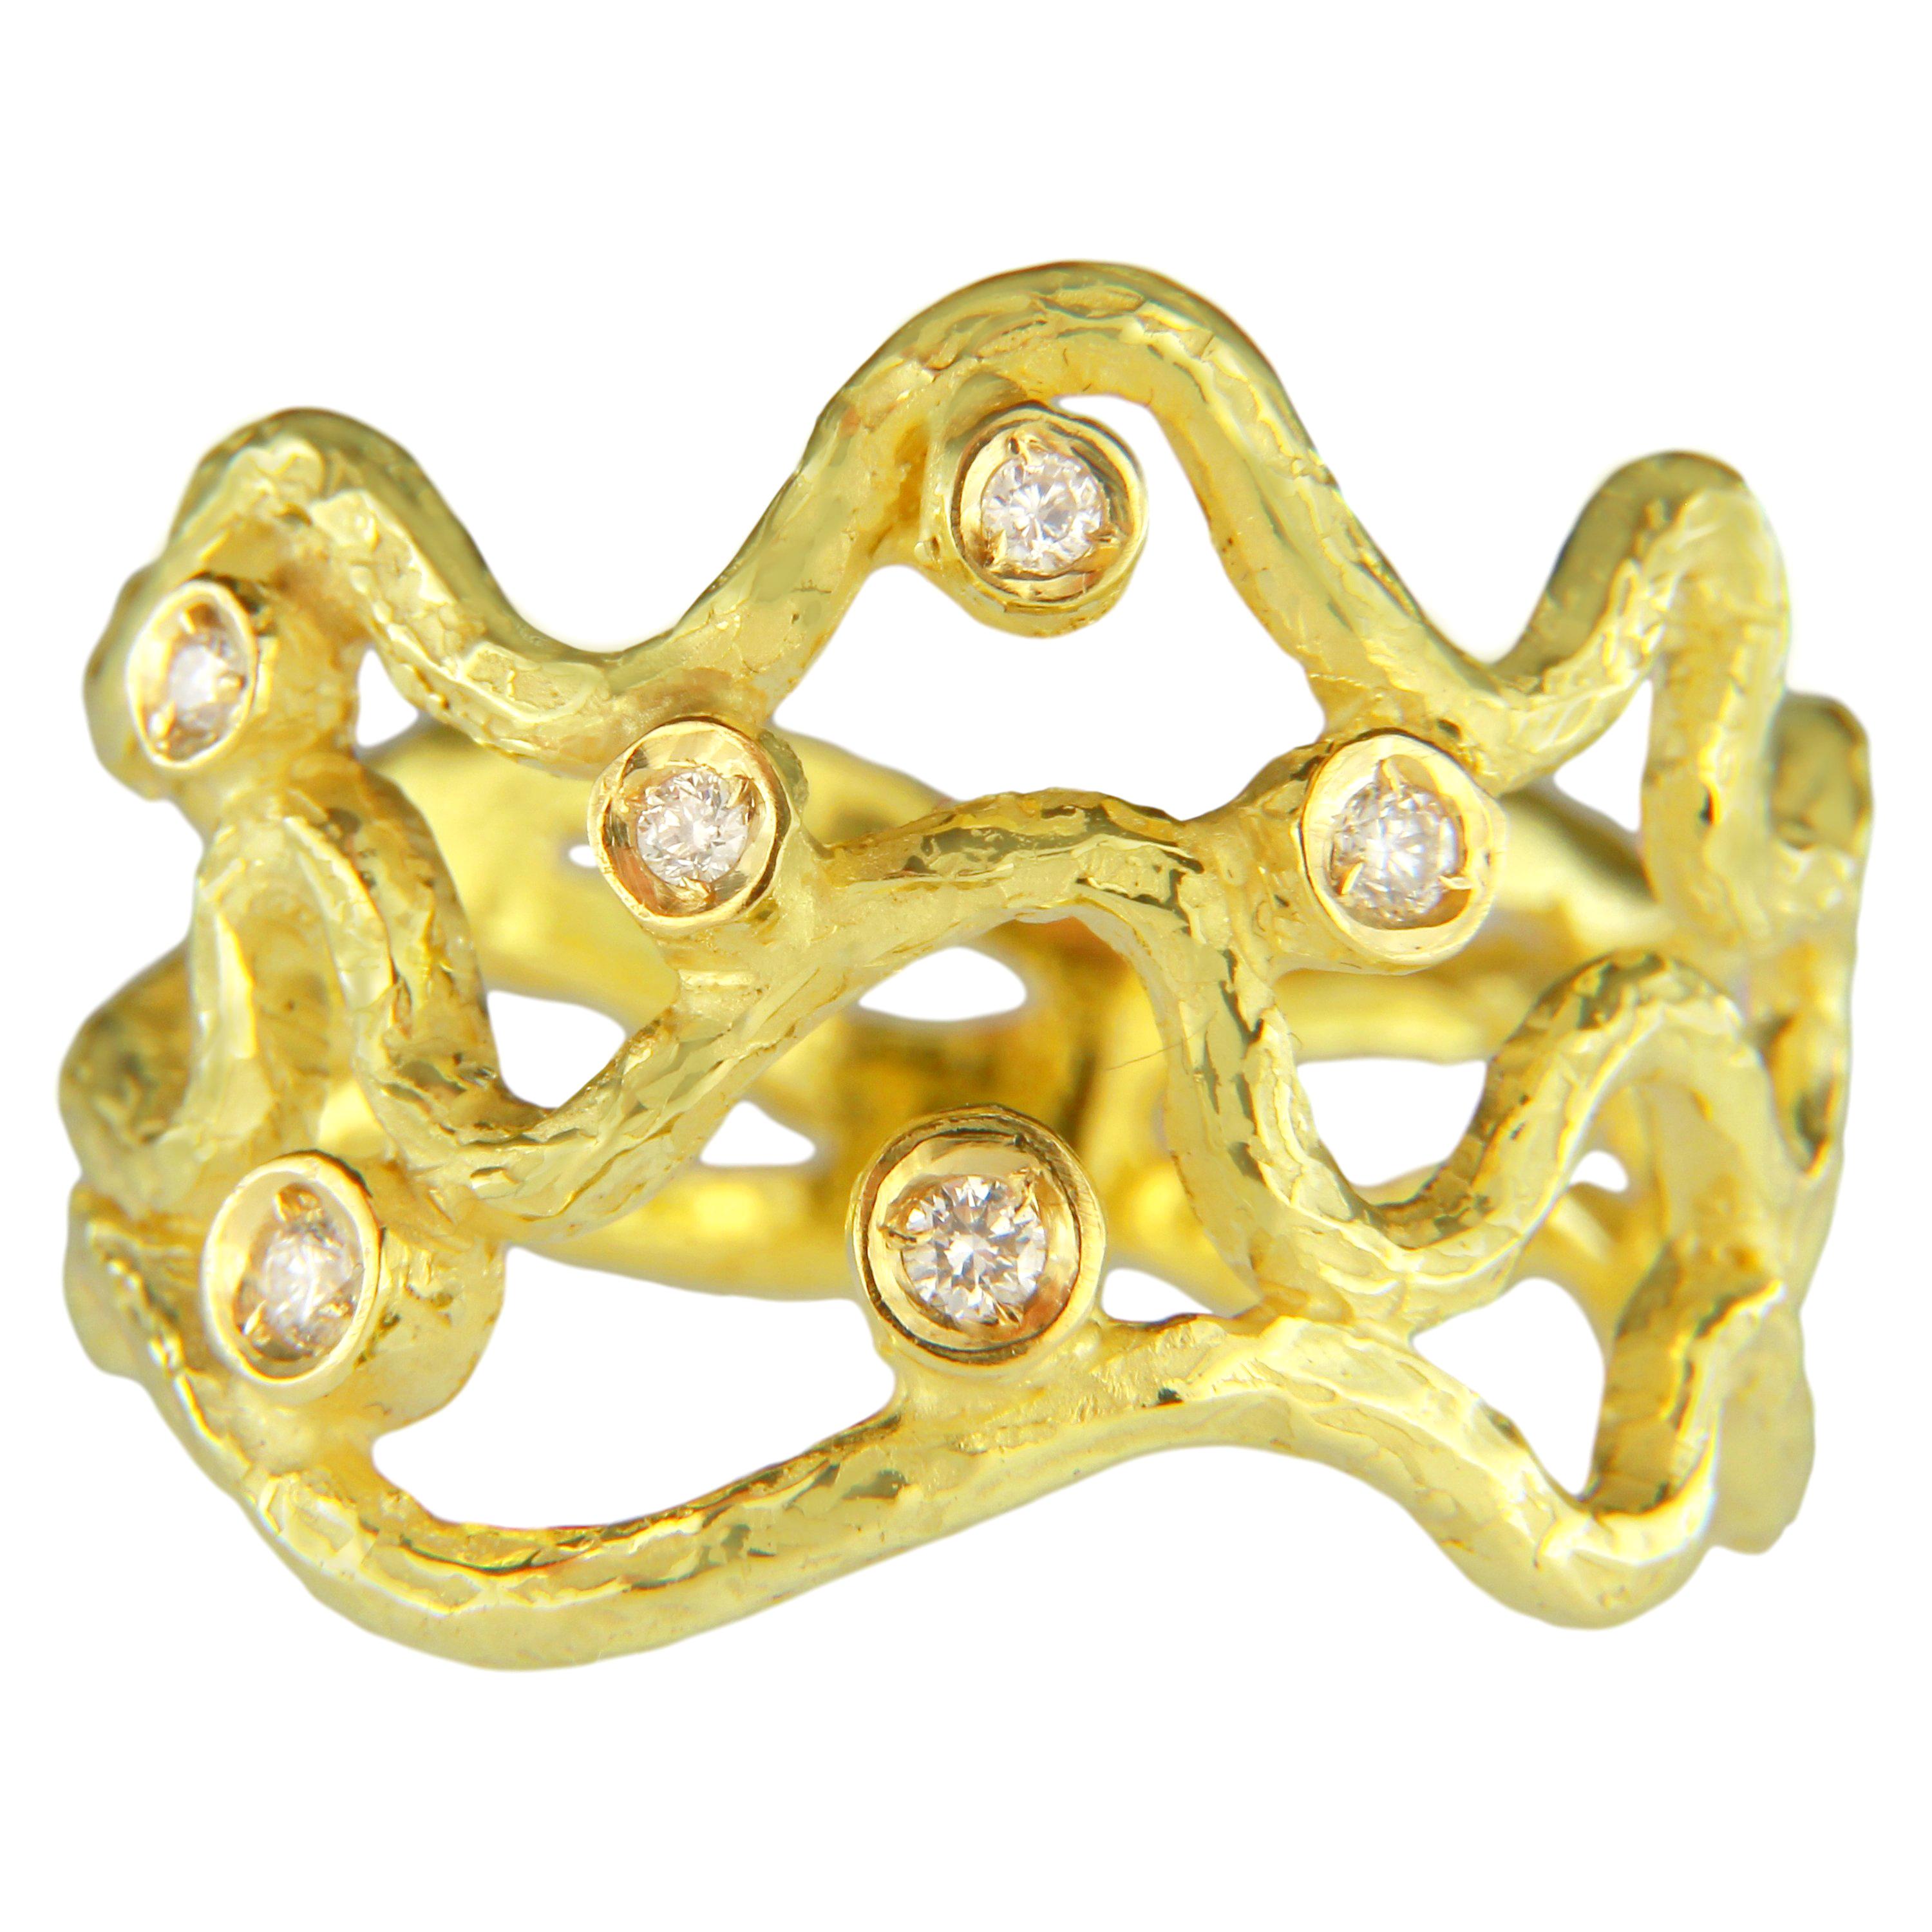 Sacchi, bague à la mode Serpenti en or jaune satiné 18 carats avec diamants et pierres précieuses